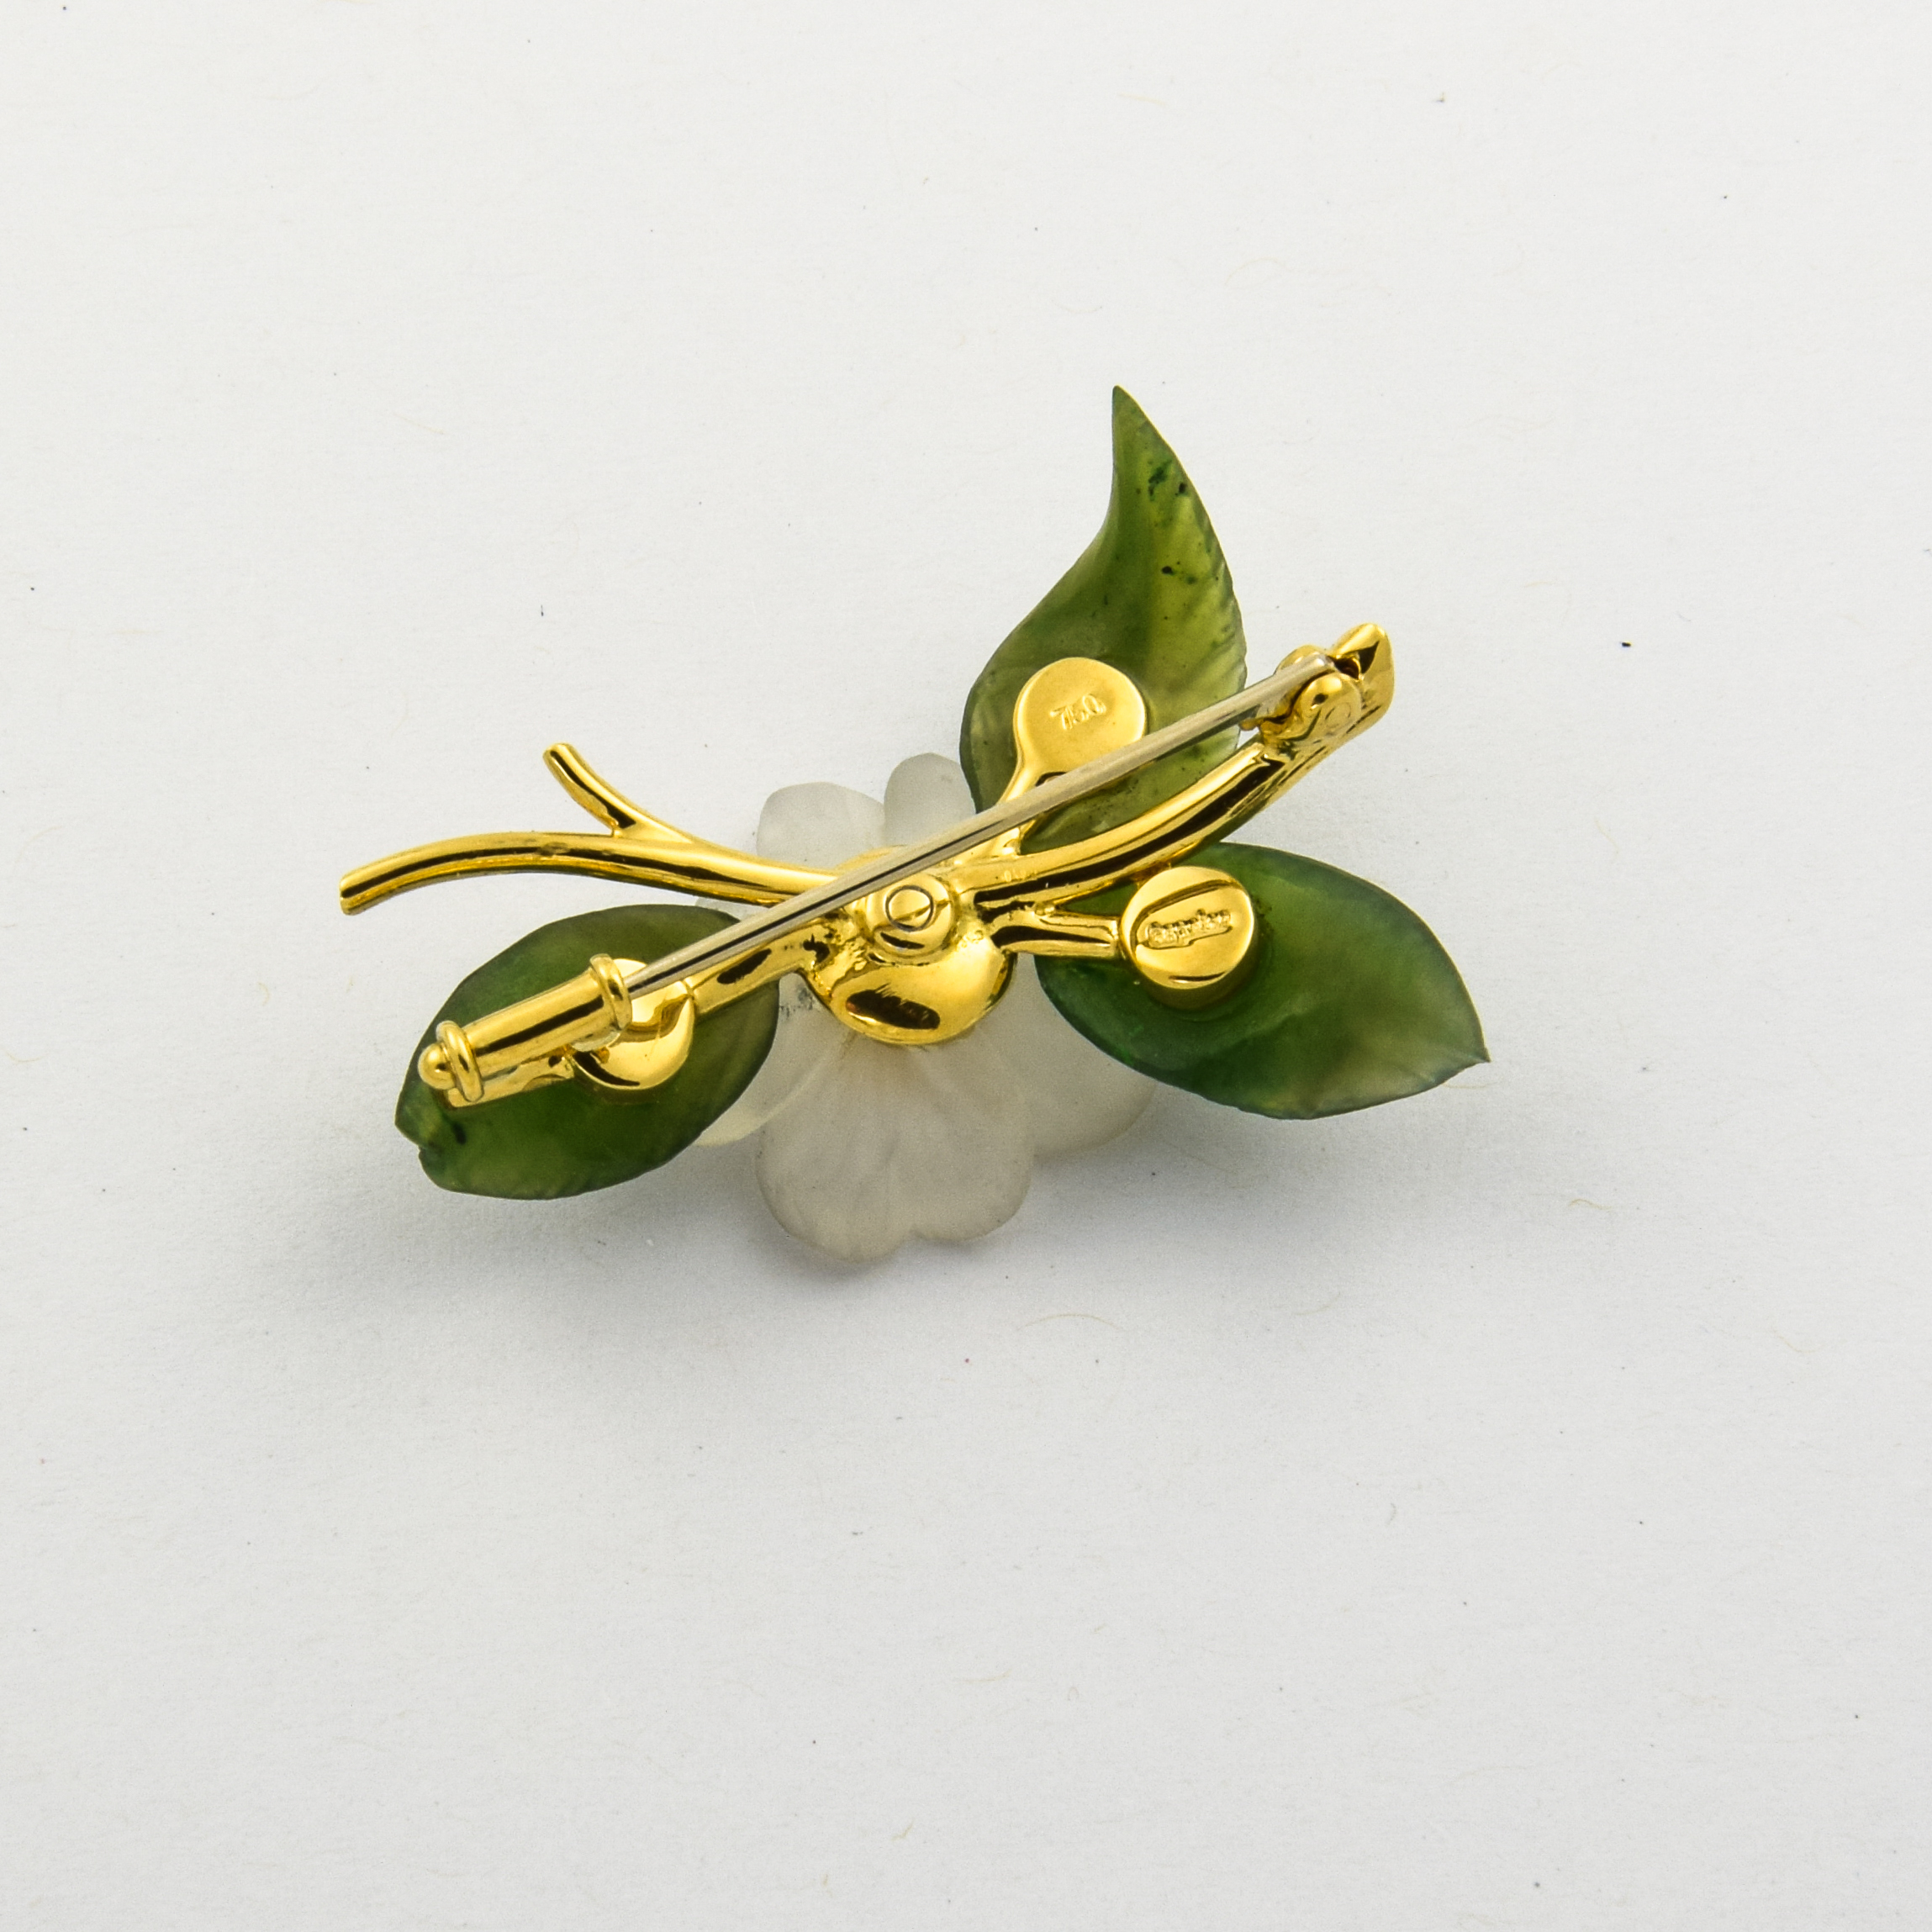 Brosche aus 750 Gelbgold mit Jade, Bergkristall und Perle, nachhaltiger second hand Schmuck perfekt aufgearbeitet